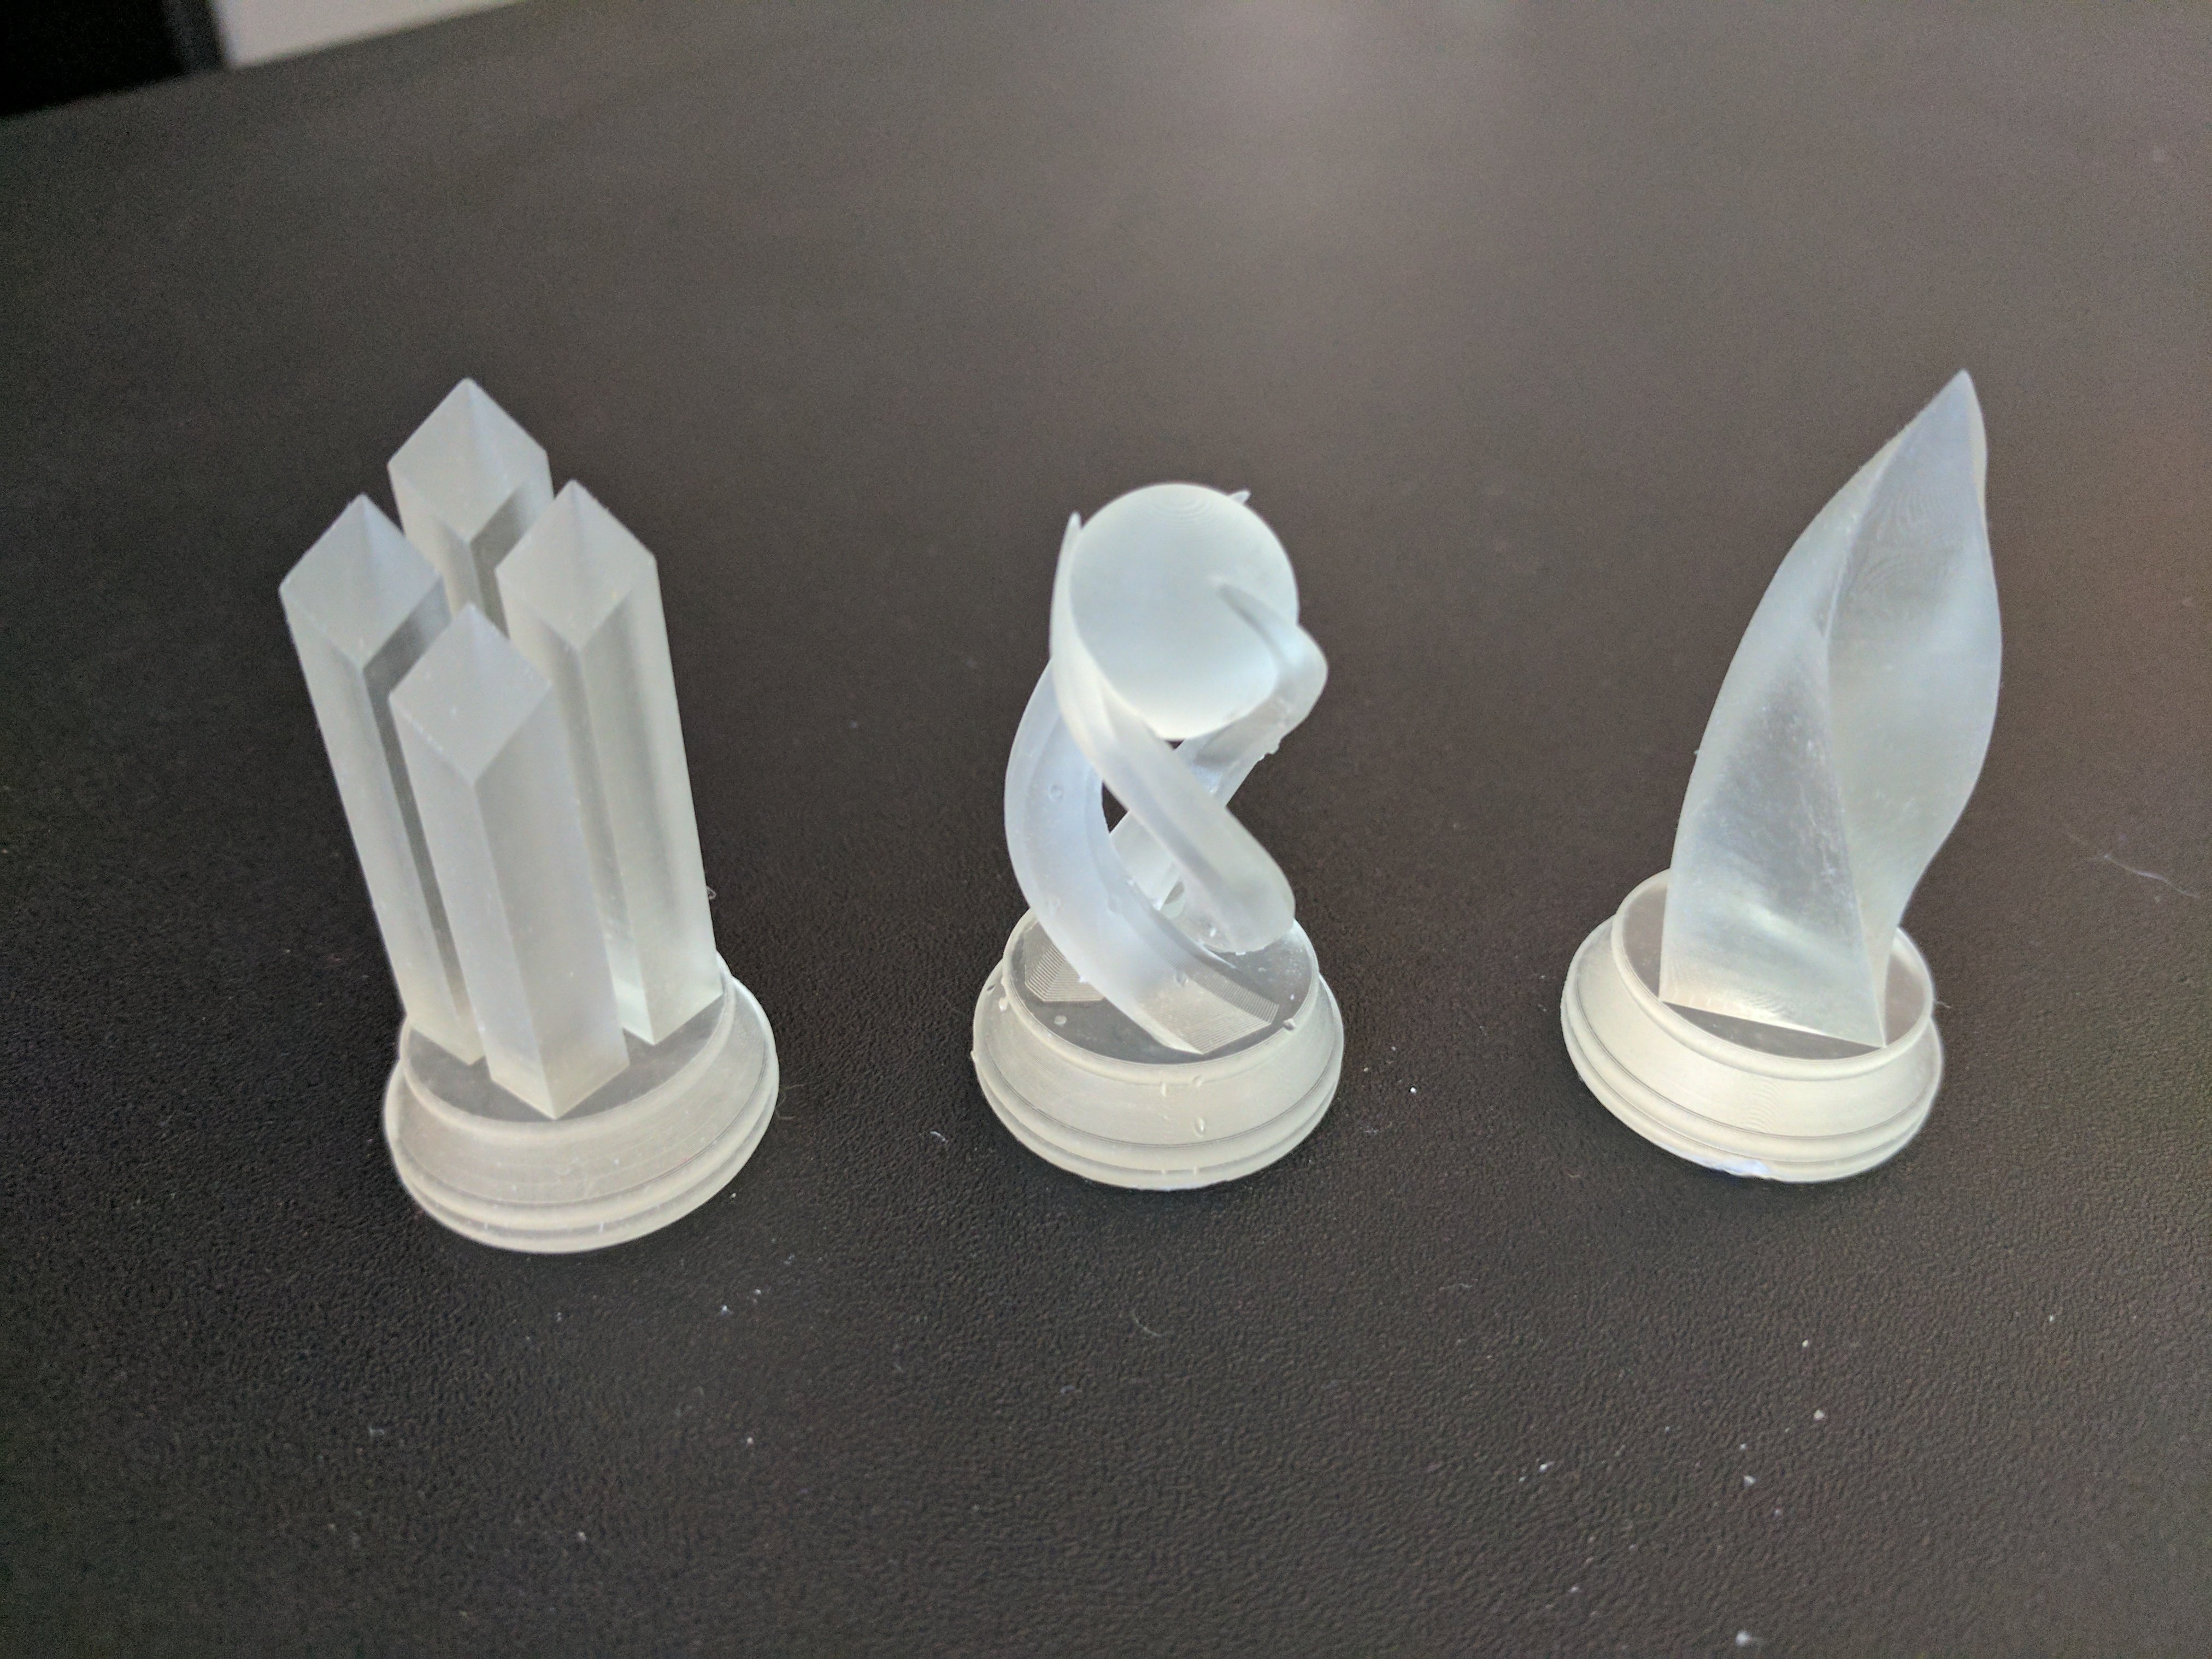 Crystal Chess Set - SLA 3D Printing